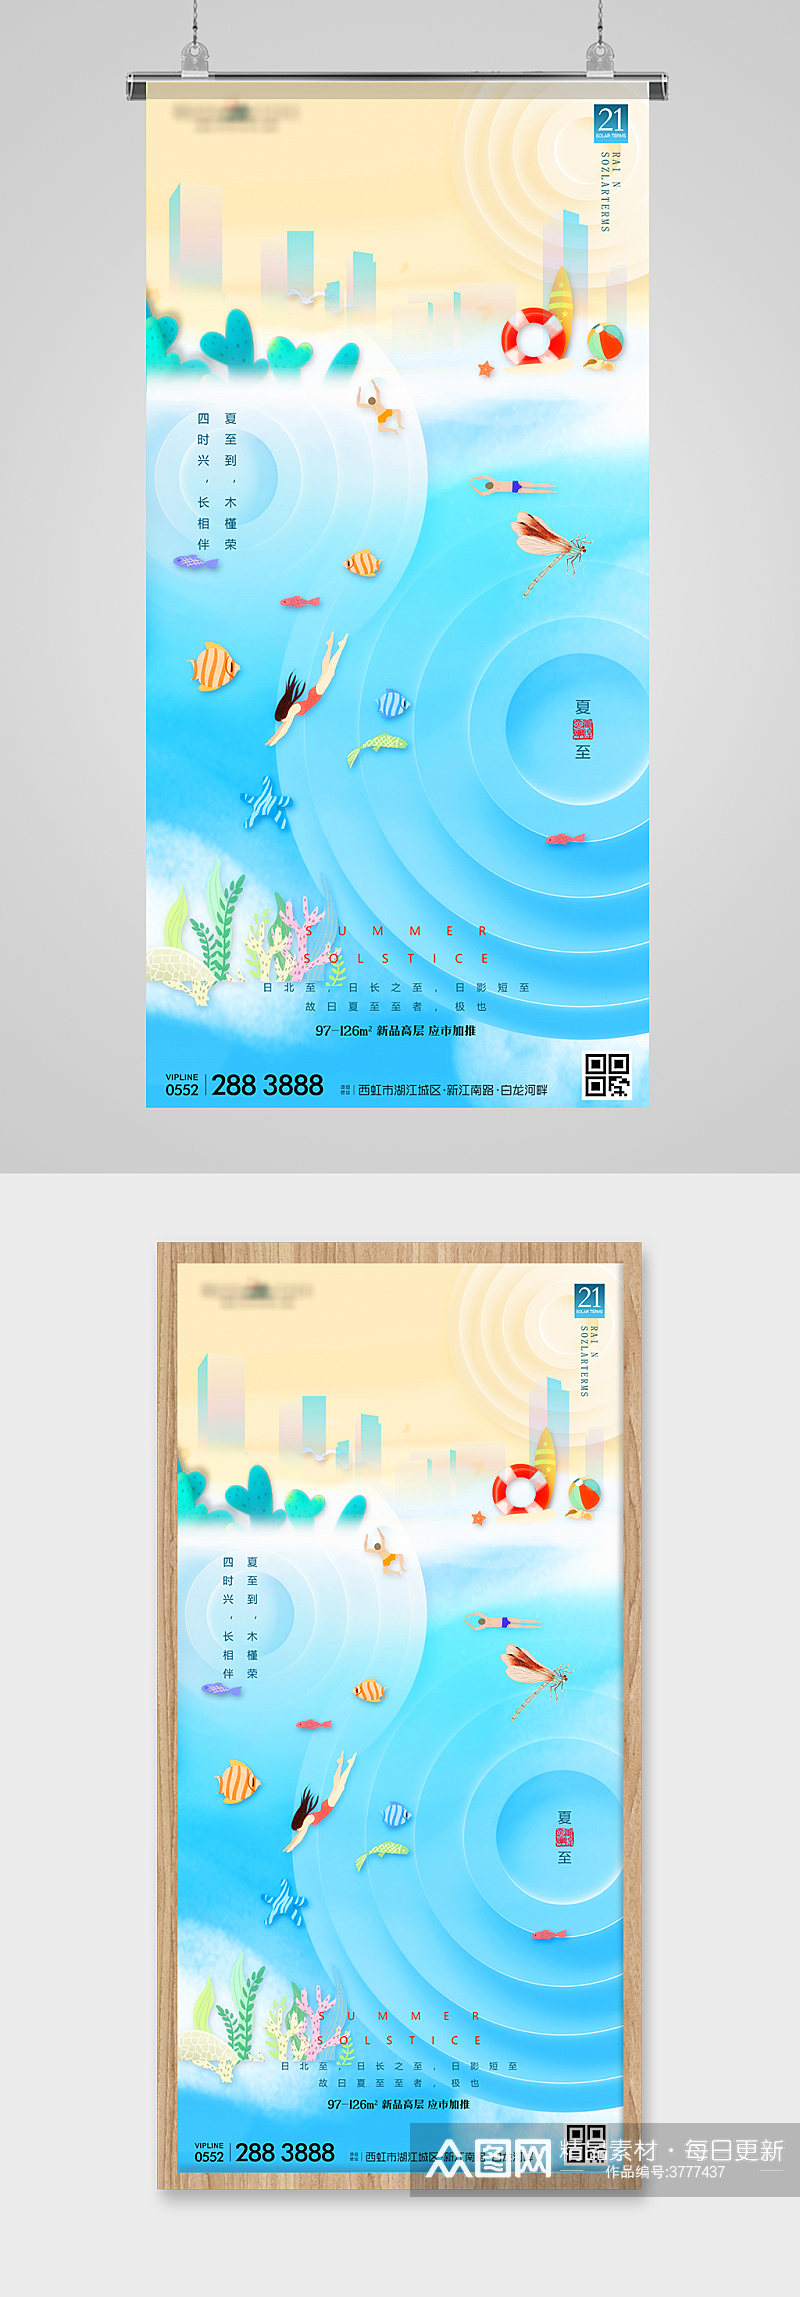 夏至节气海滨抽象插画地产海报素材